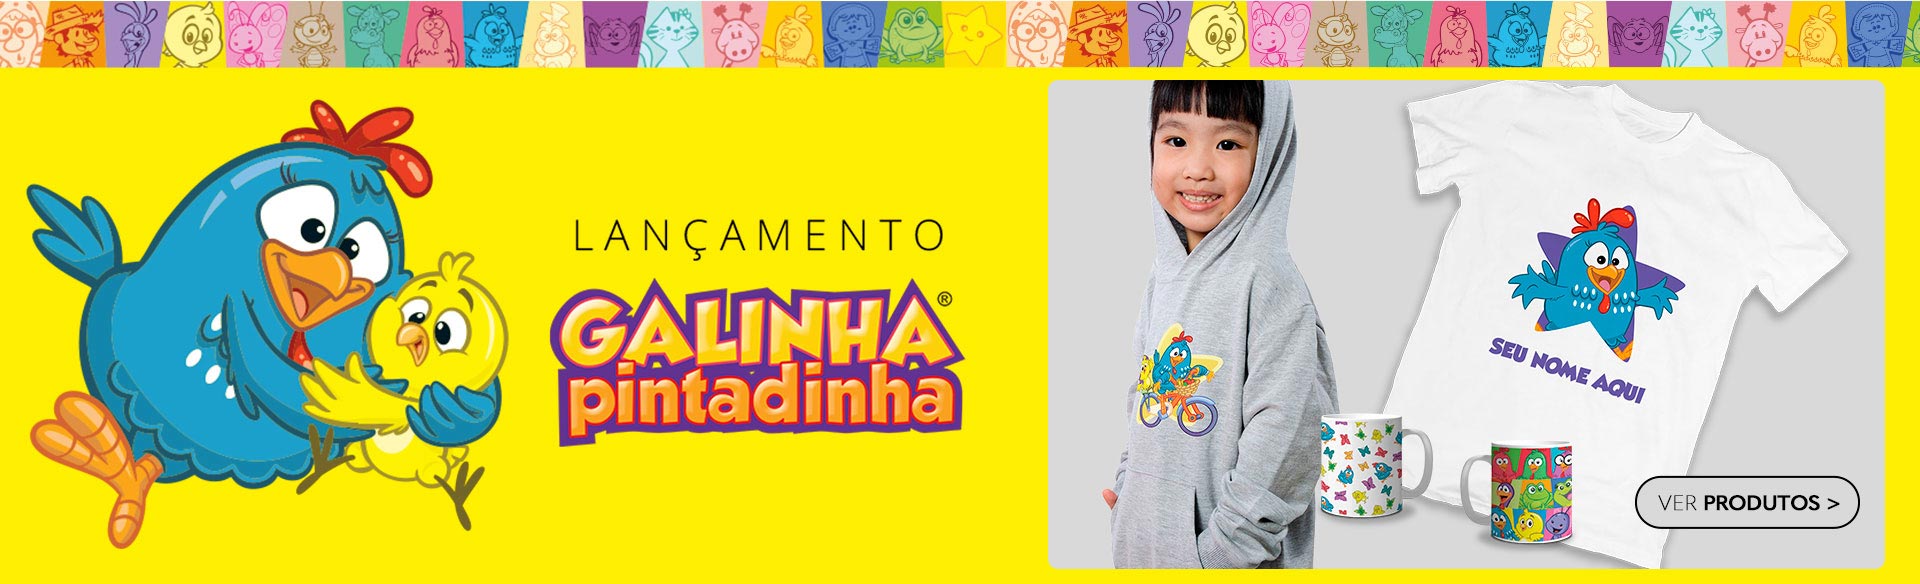 Banner Galinha Pintadinha